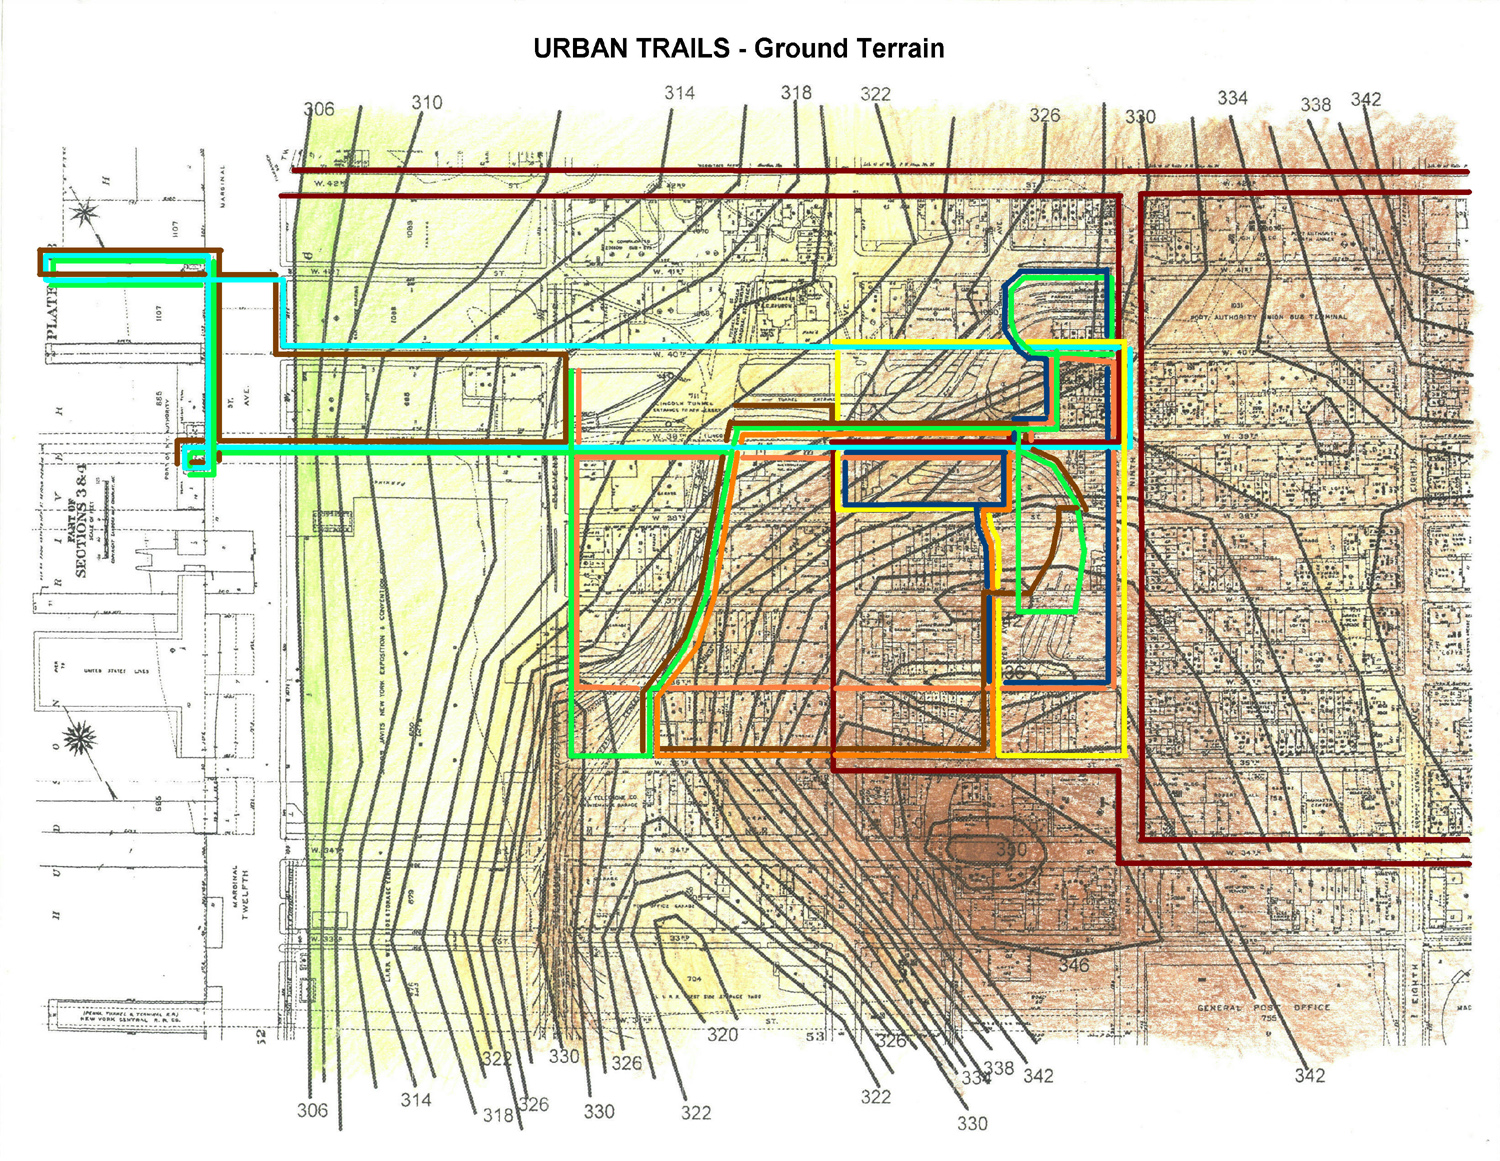  Urban Trail network on Ground Terrain 